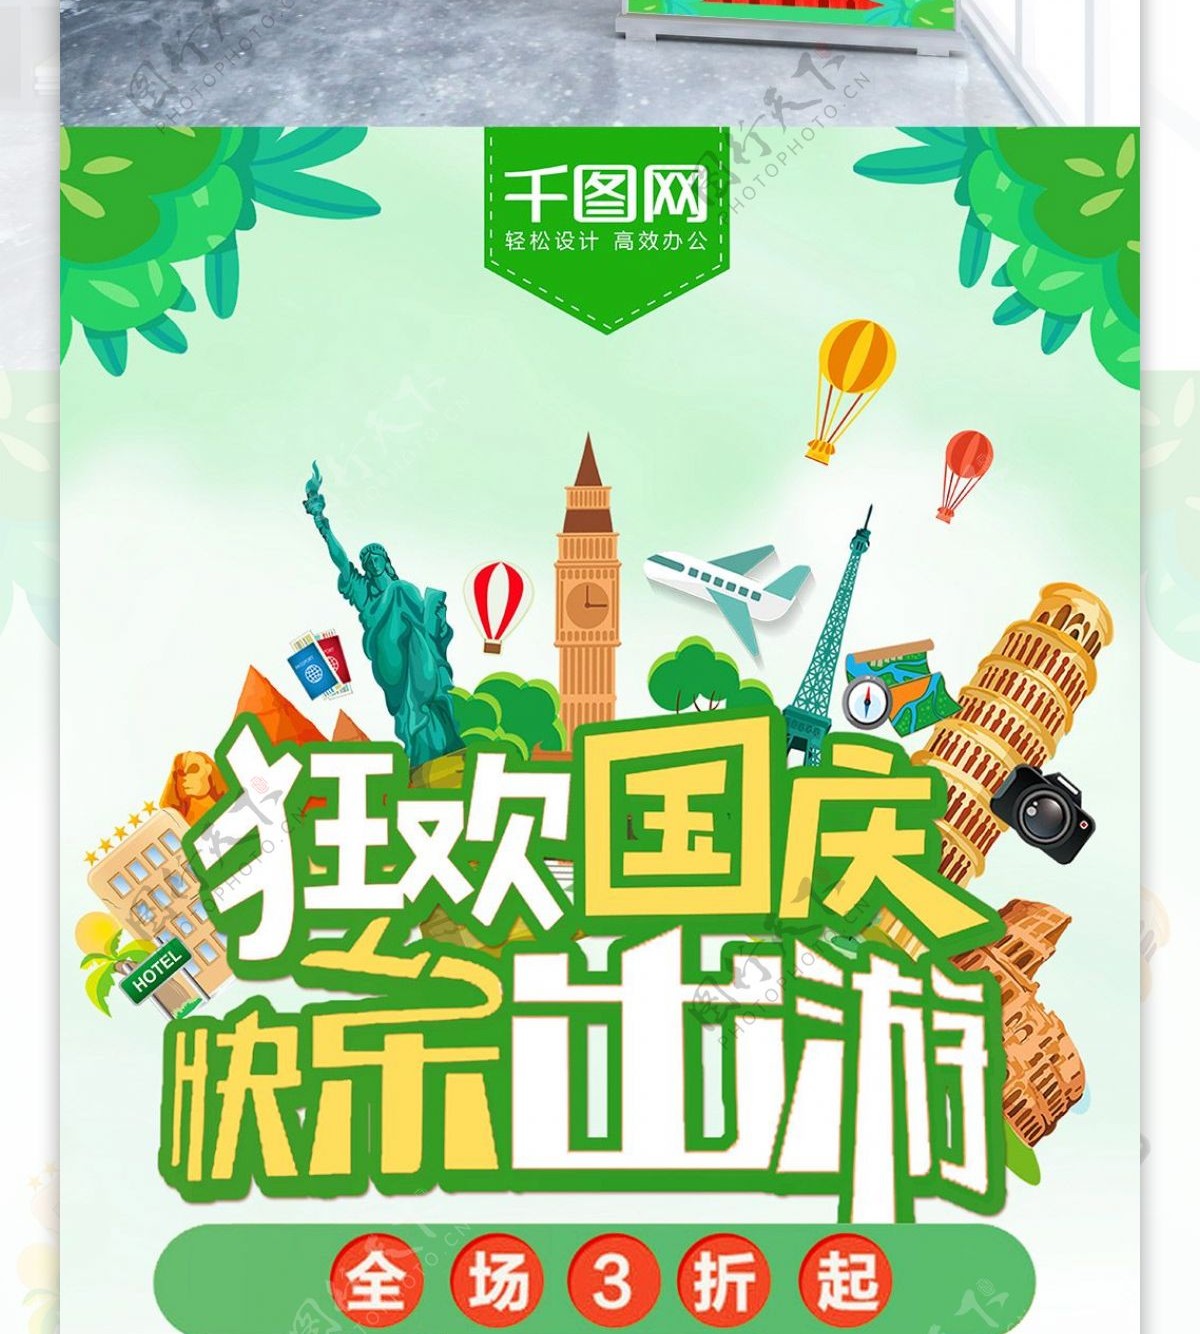 绿色清新十一狂欢国庆出游季促销展架